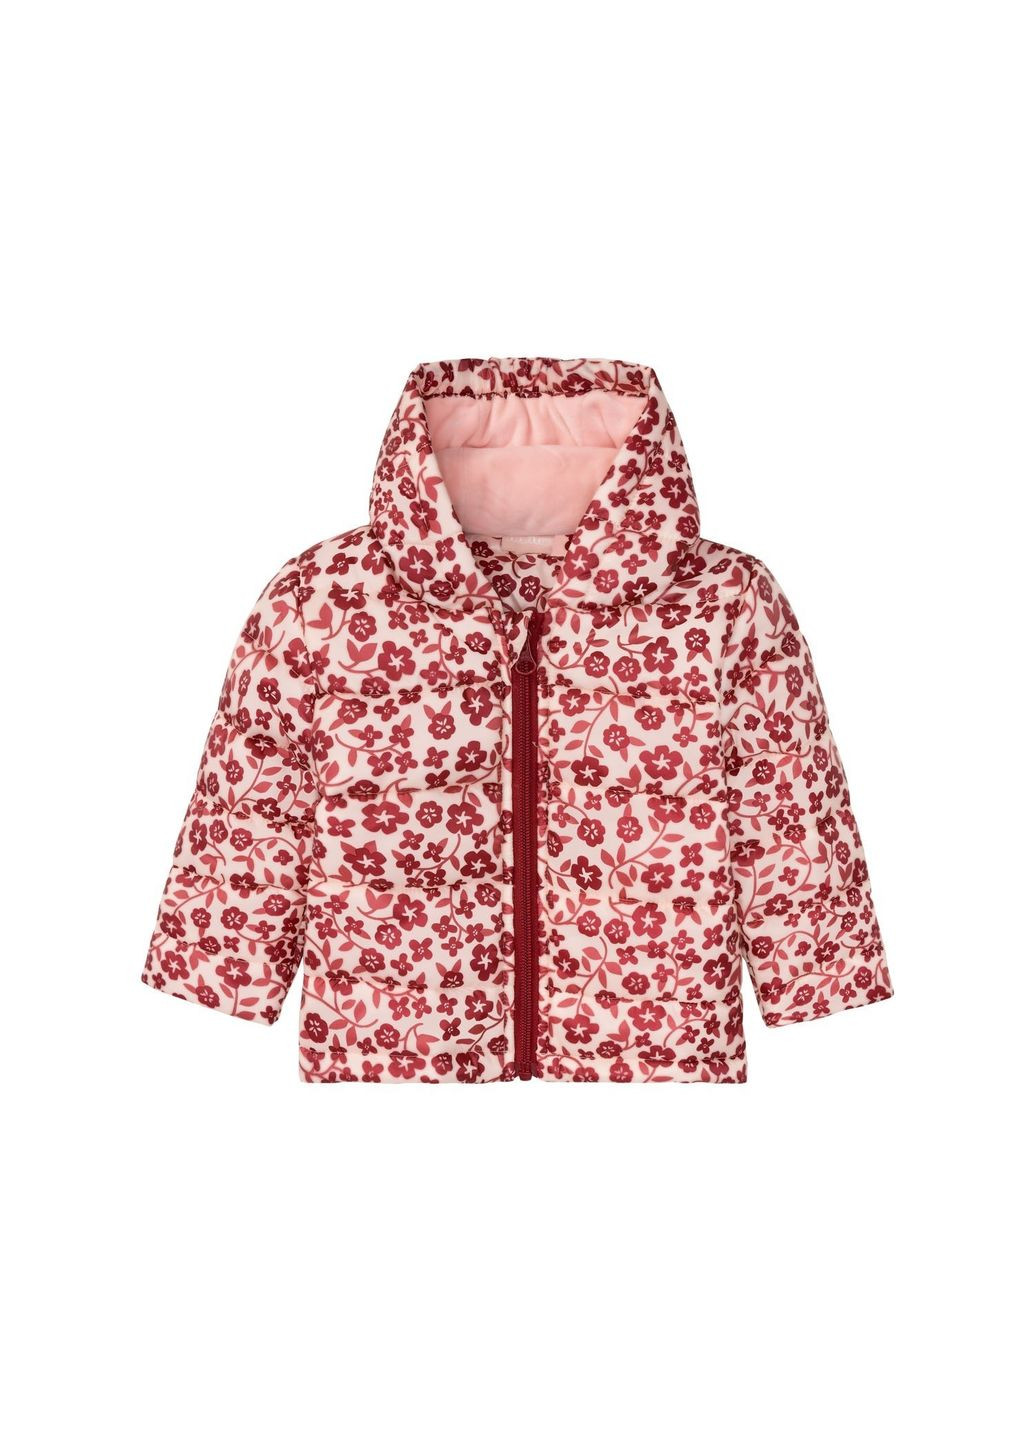 Комбинированная демисезонная куртка демисезонная водоотталкивающая и ветрозащитная для девочки 358459 Lupilu